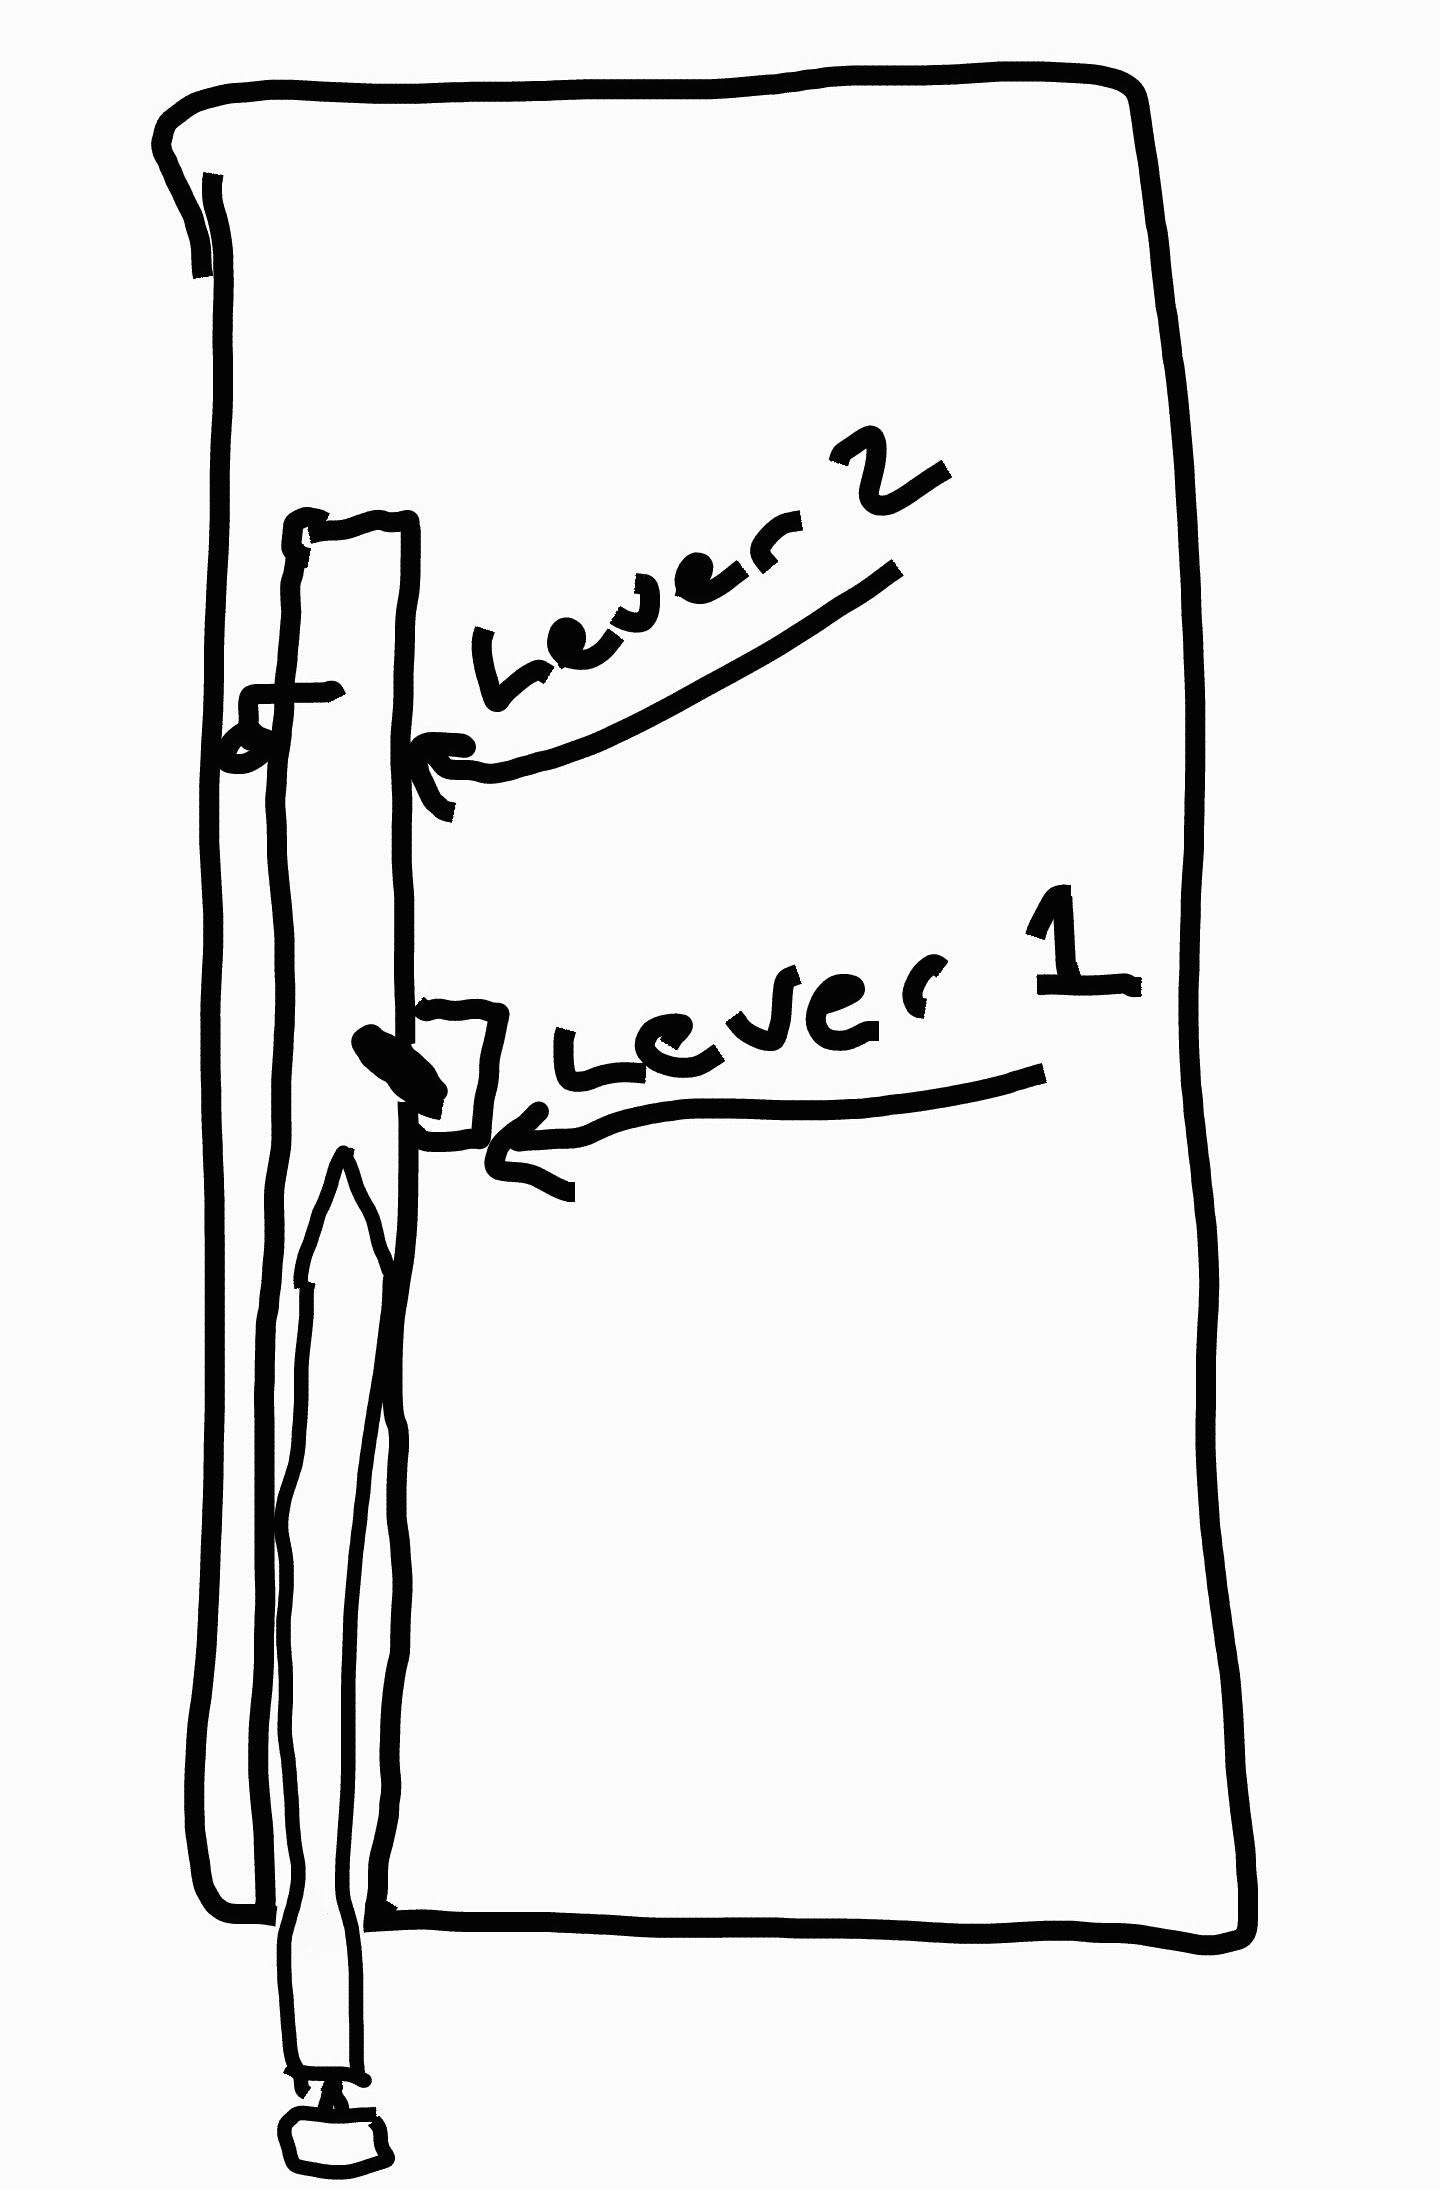 ภาพวาดแสดงตำแหน่งของ Lever 2 และ Lever 1